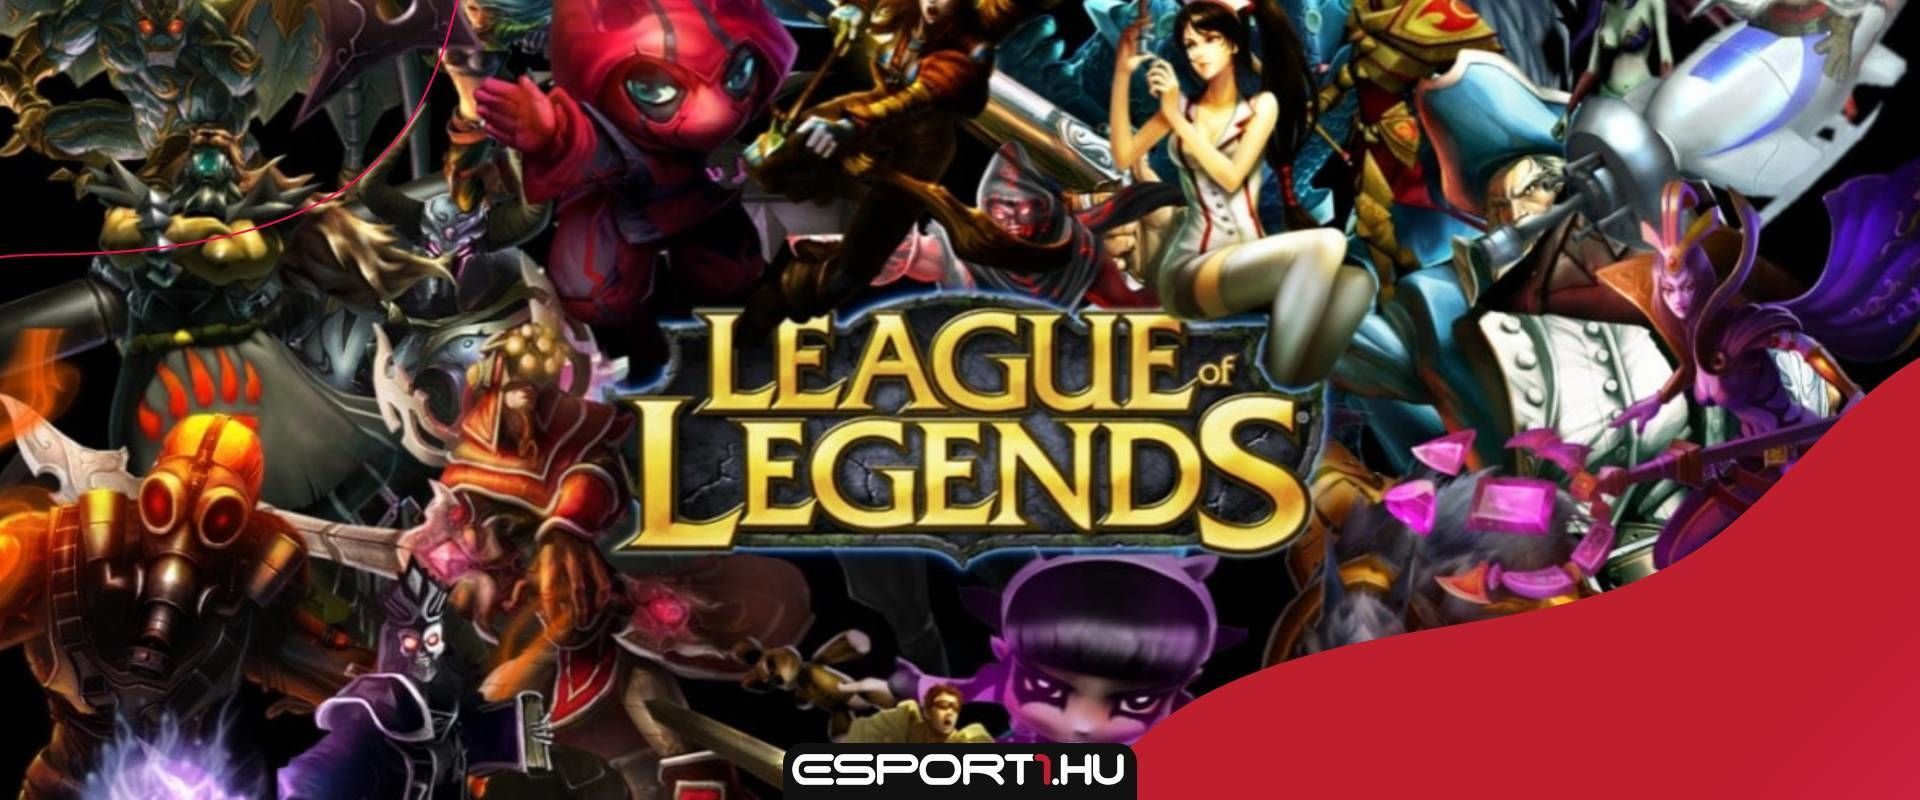 Ilyen volt a League of Legends világa 2013.04.14-én! - Időkapszula egy LoL rajongótól